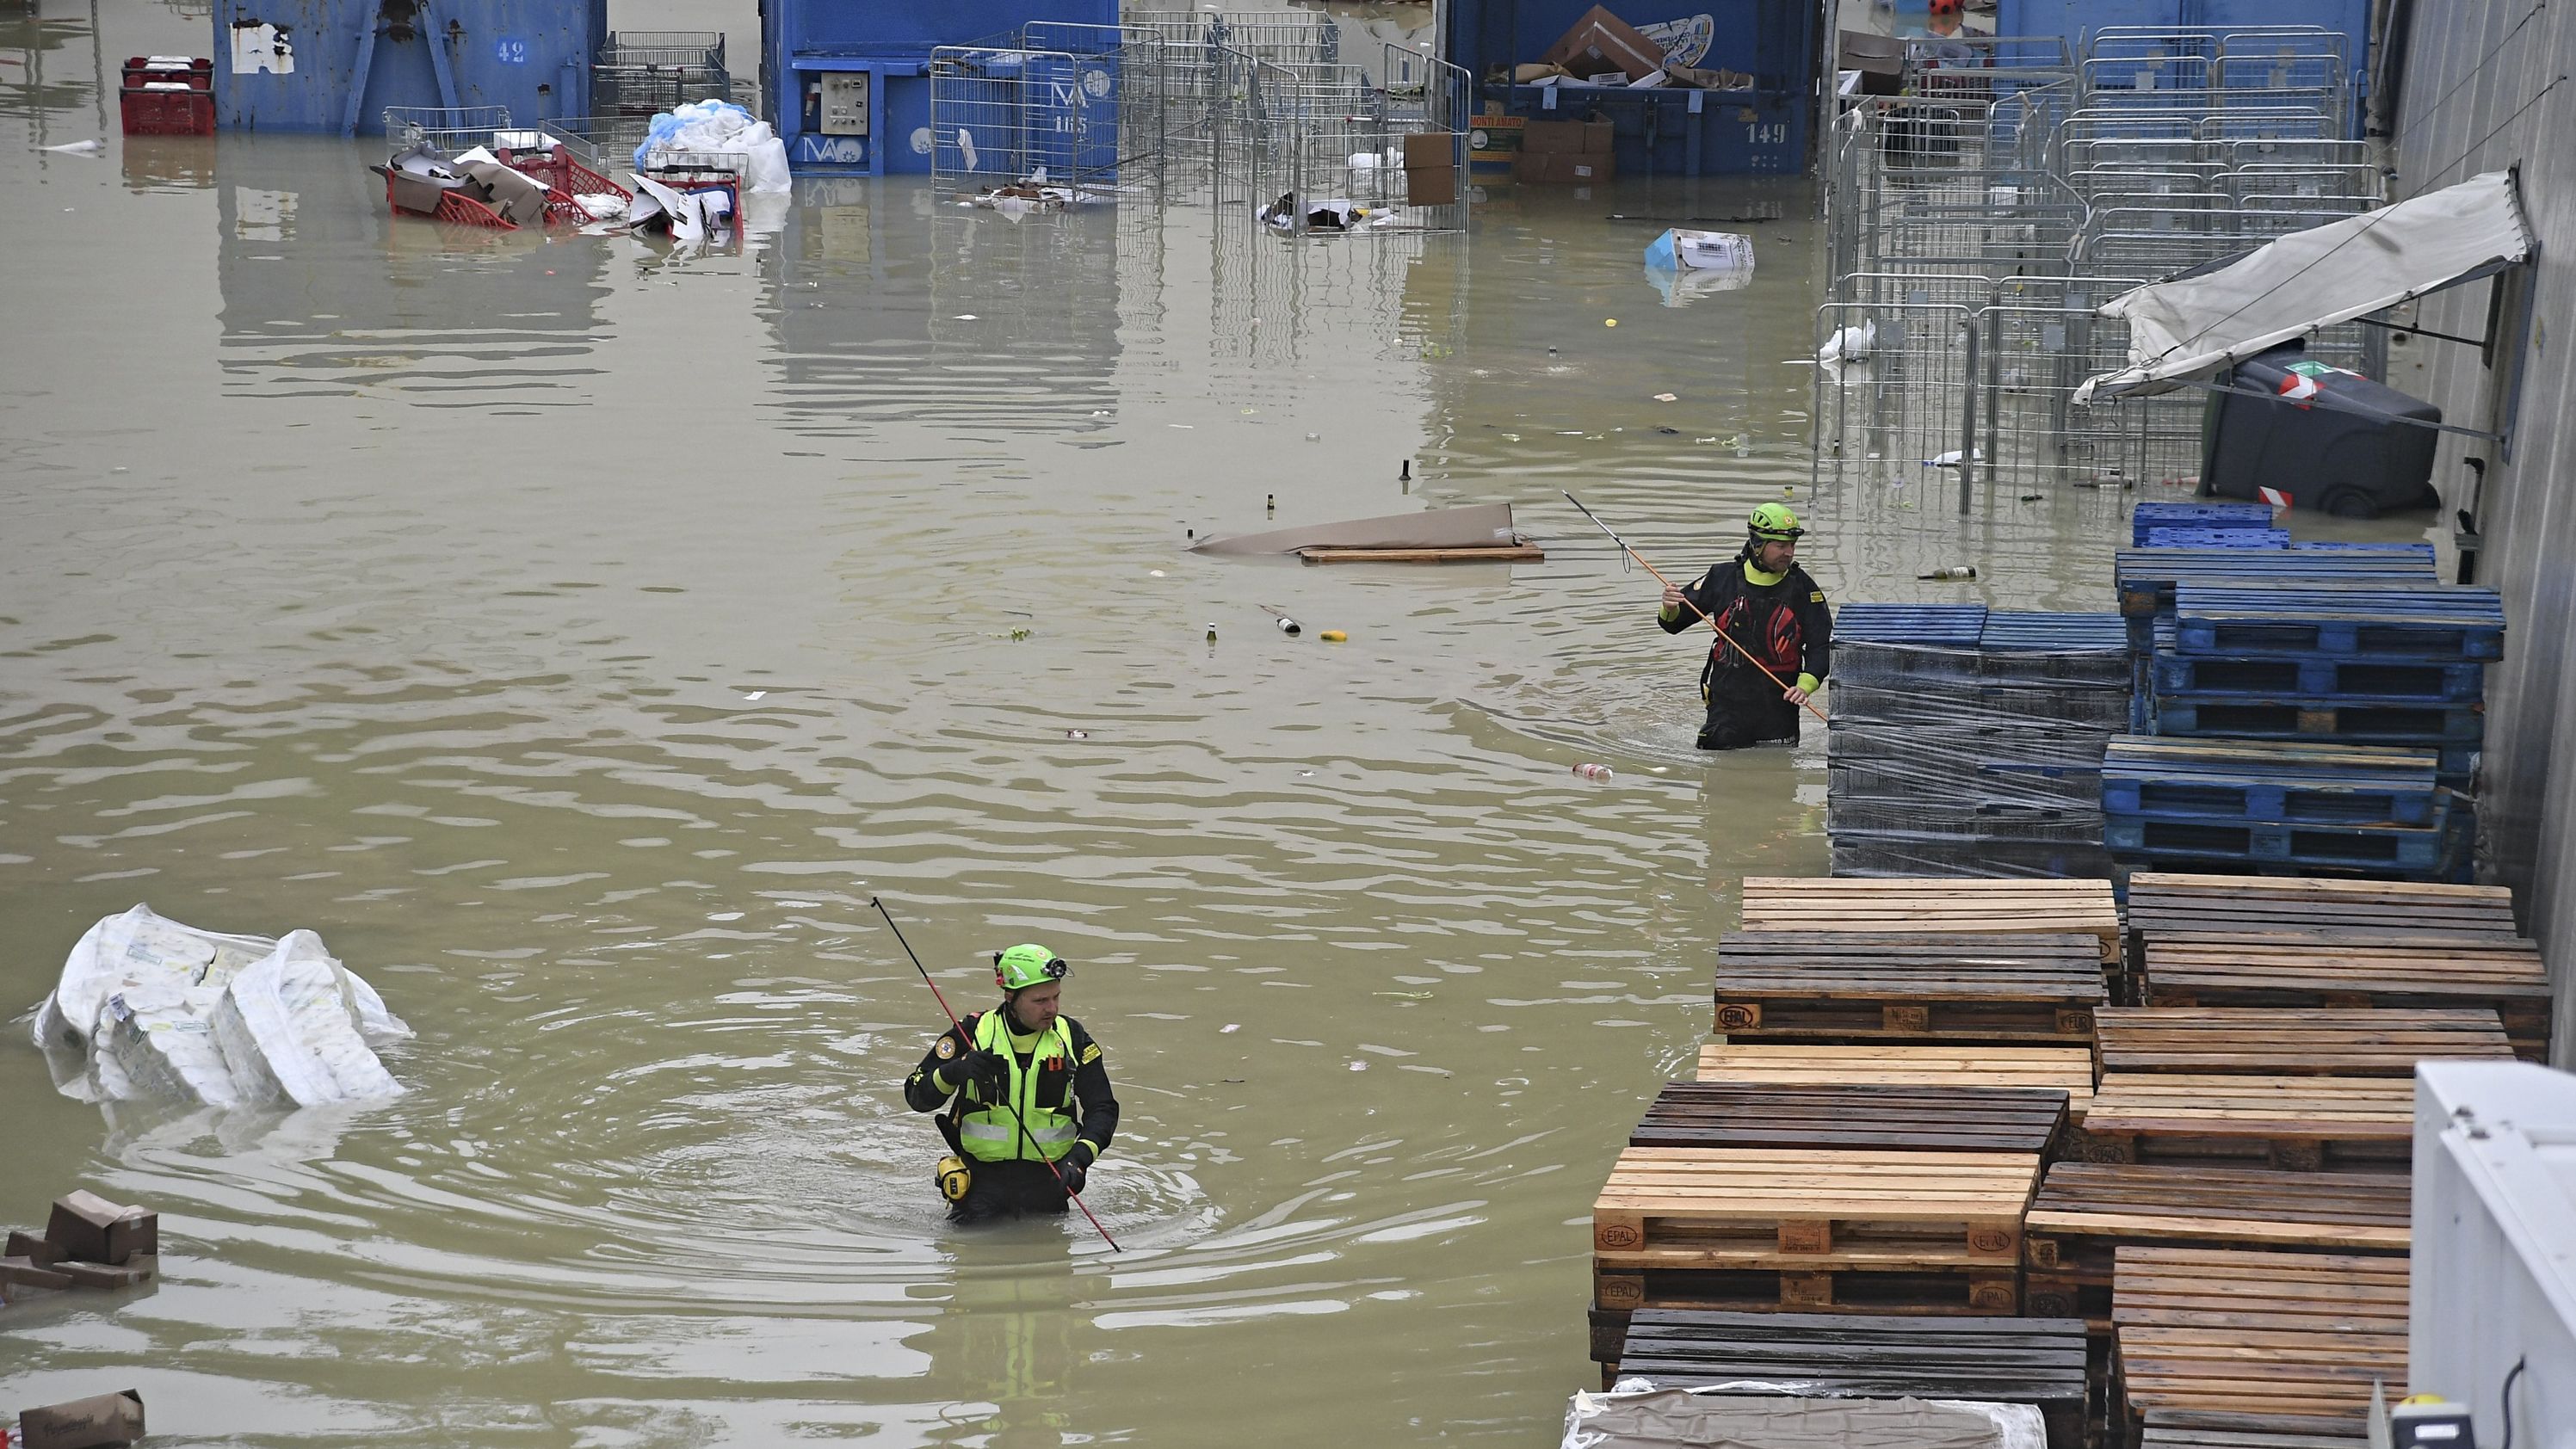 Azerbaijan extends condolences over deadly floods in Italy